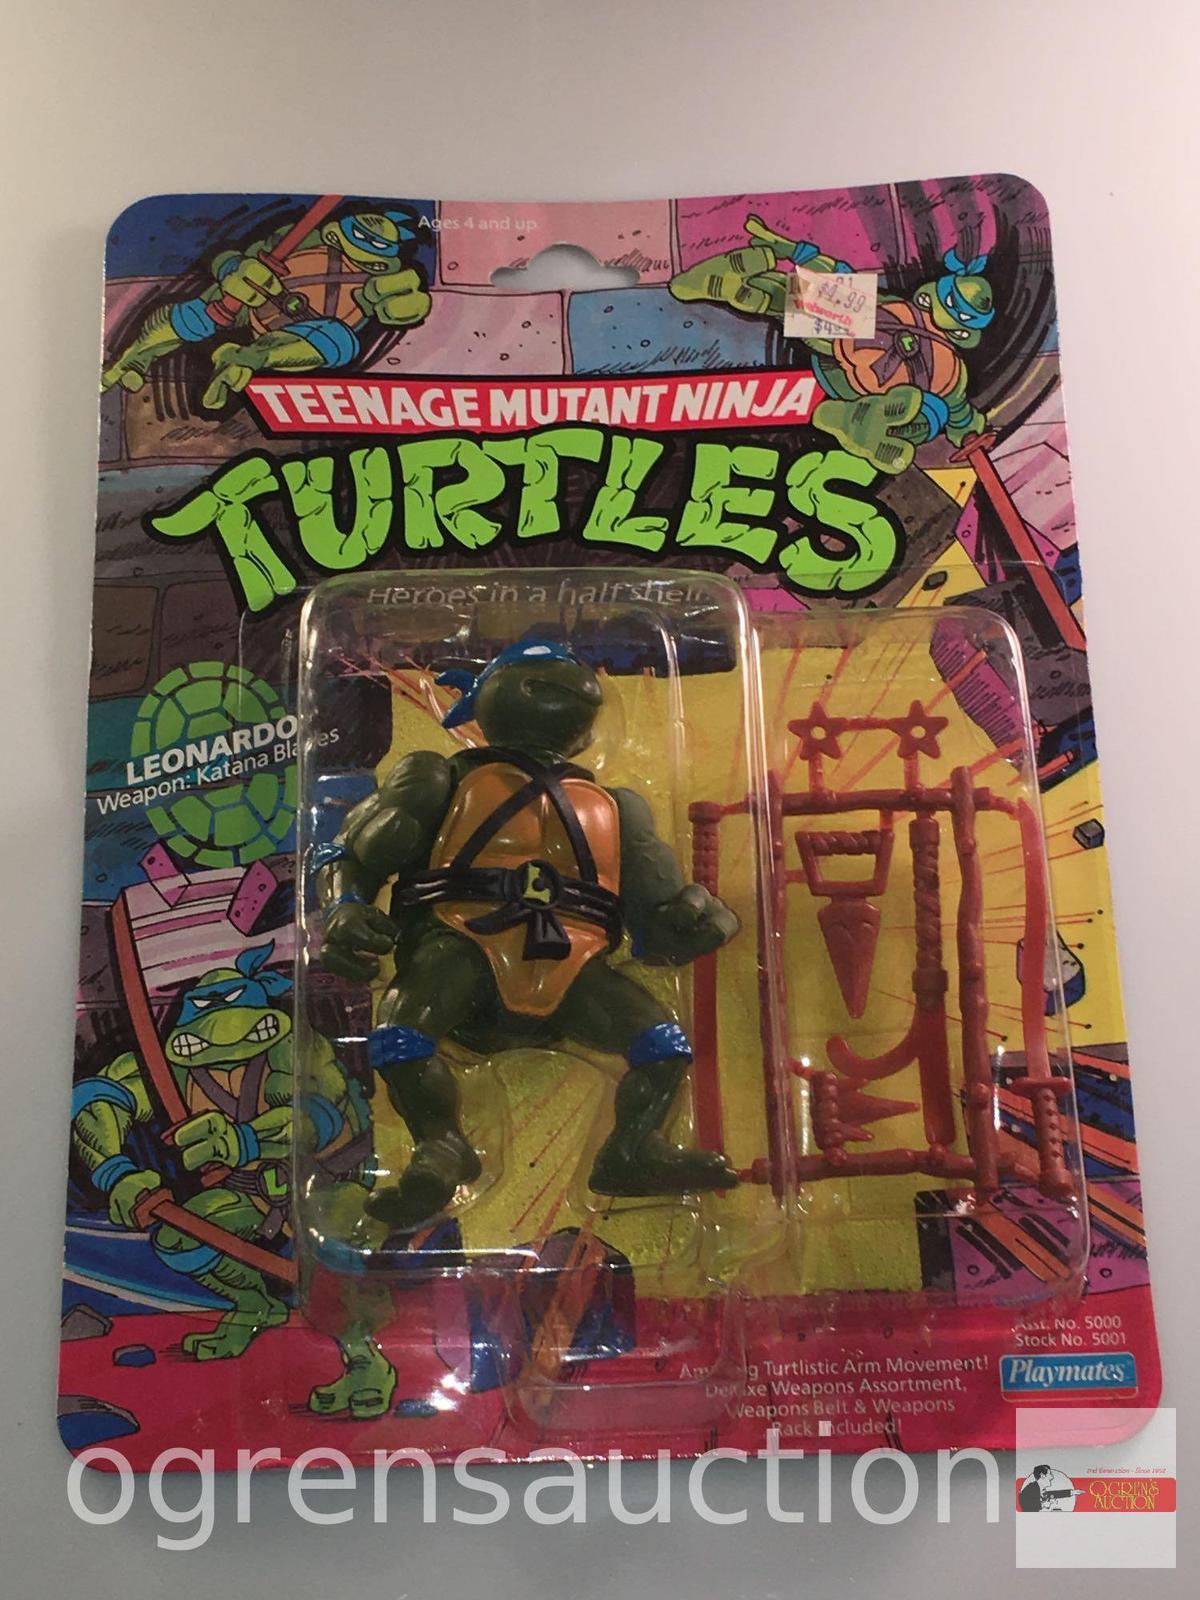 Toys - Teenage Mutant Ninja Turtles, 1988 Leonardo, The Battle Commander for the turtles